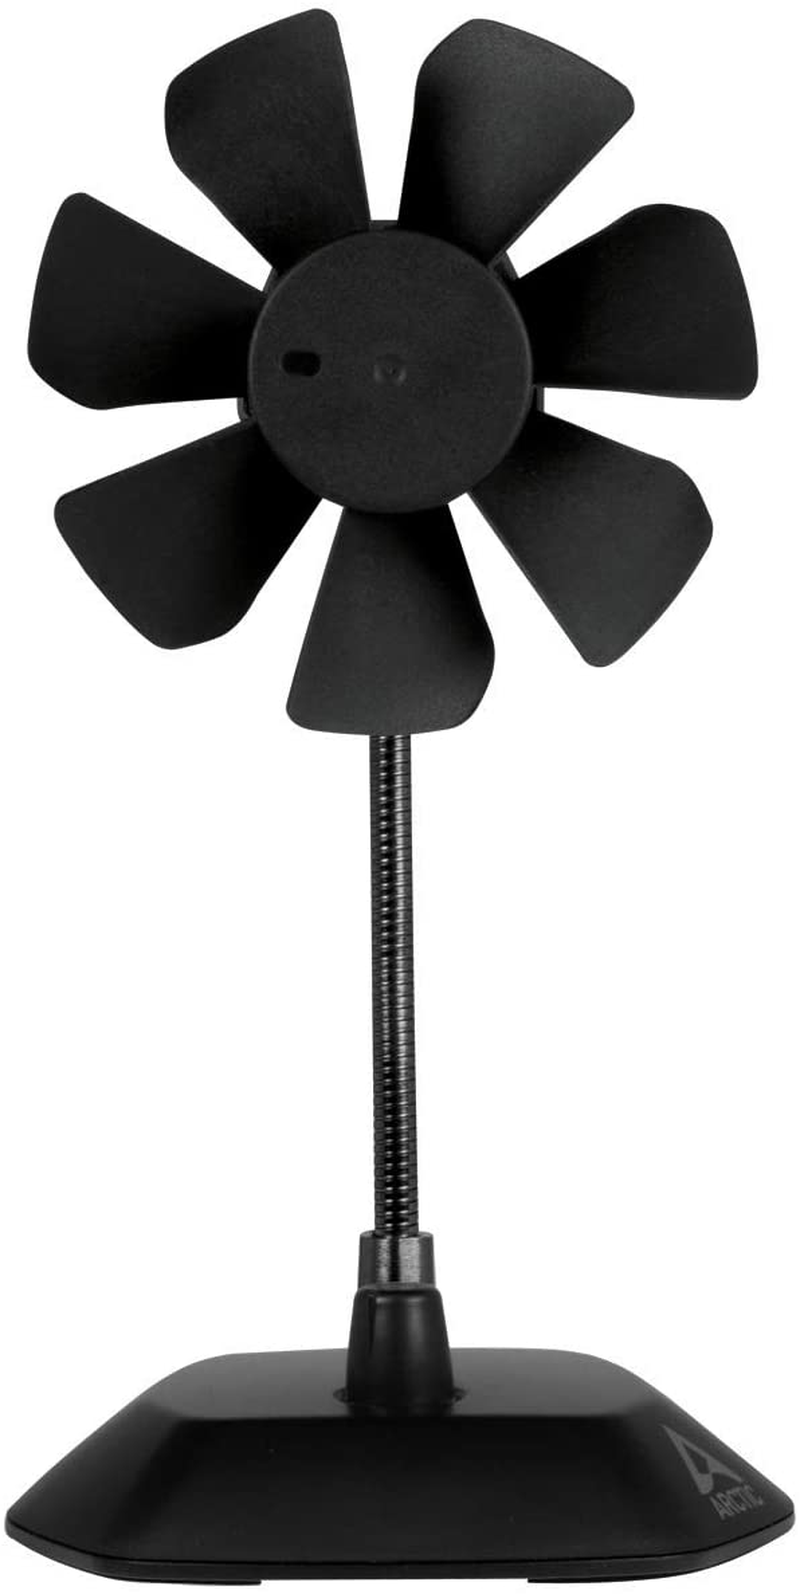 ARCTIC Breeze - USB Desktop Fan with Flexible Neck and Adjustable Fan Speed, Portable Desk Fan for Home, Office, Silent USB Fan, Fan Speed: 800–1800 RPM - Black